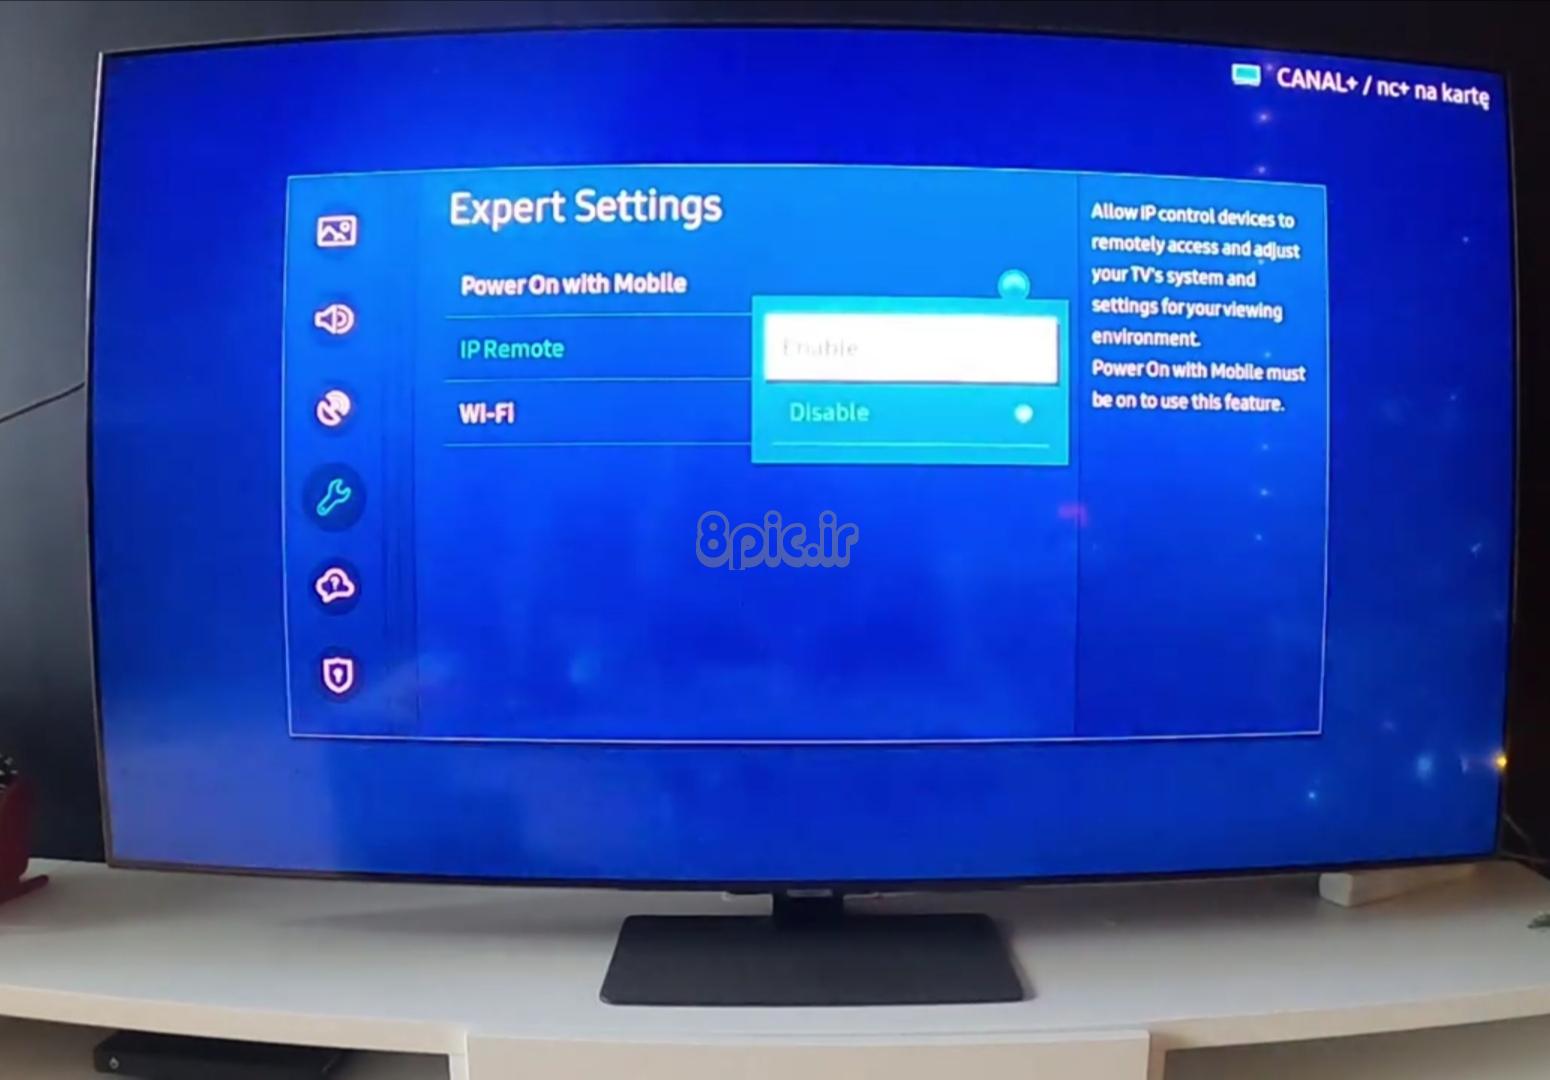 Enabling IP remote on Samsung TV